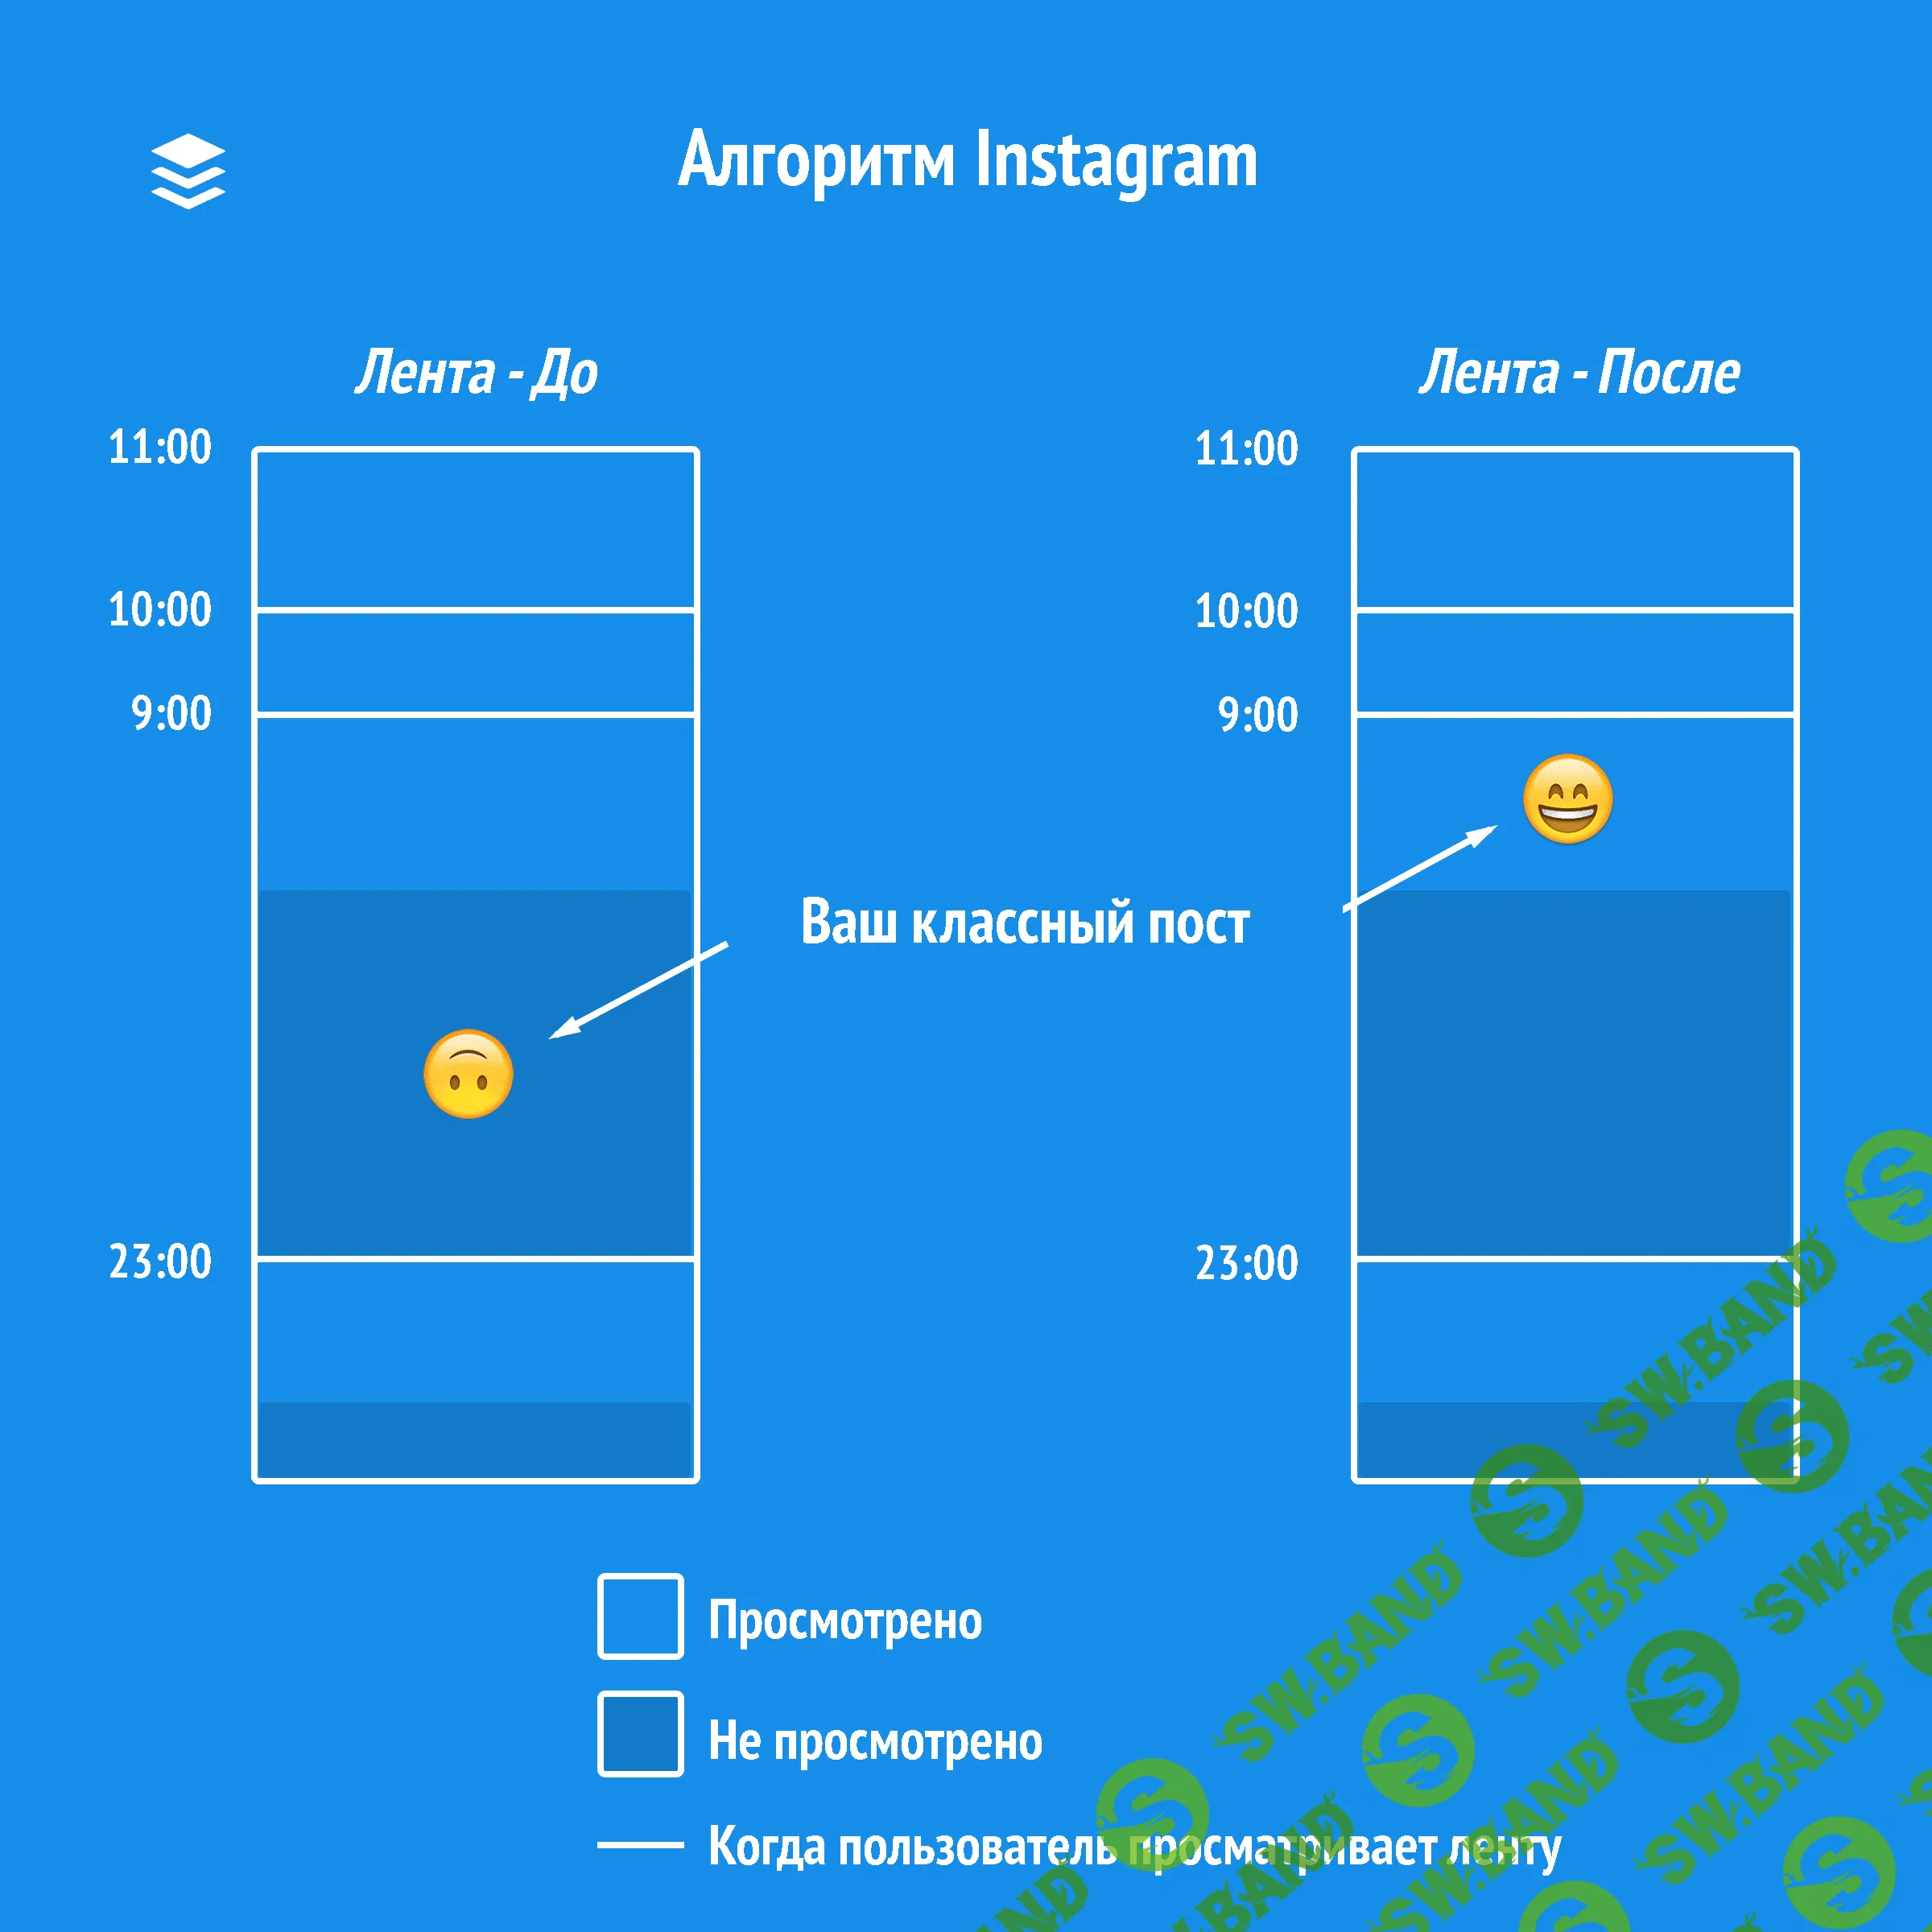 Как работает алгоритм Instagram в 2018: это нужно знать